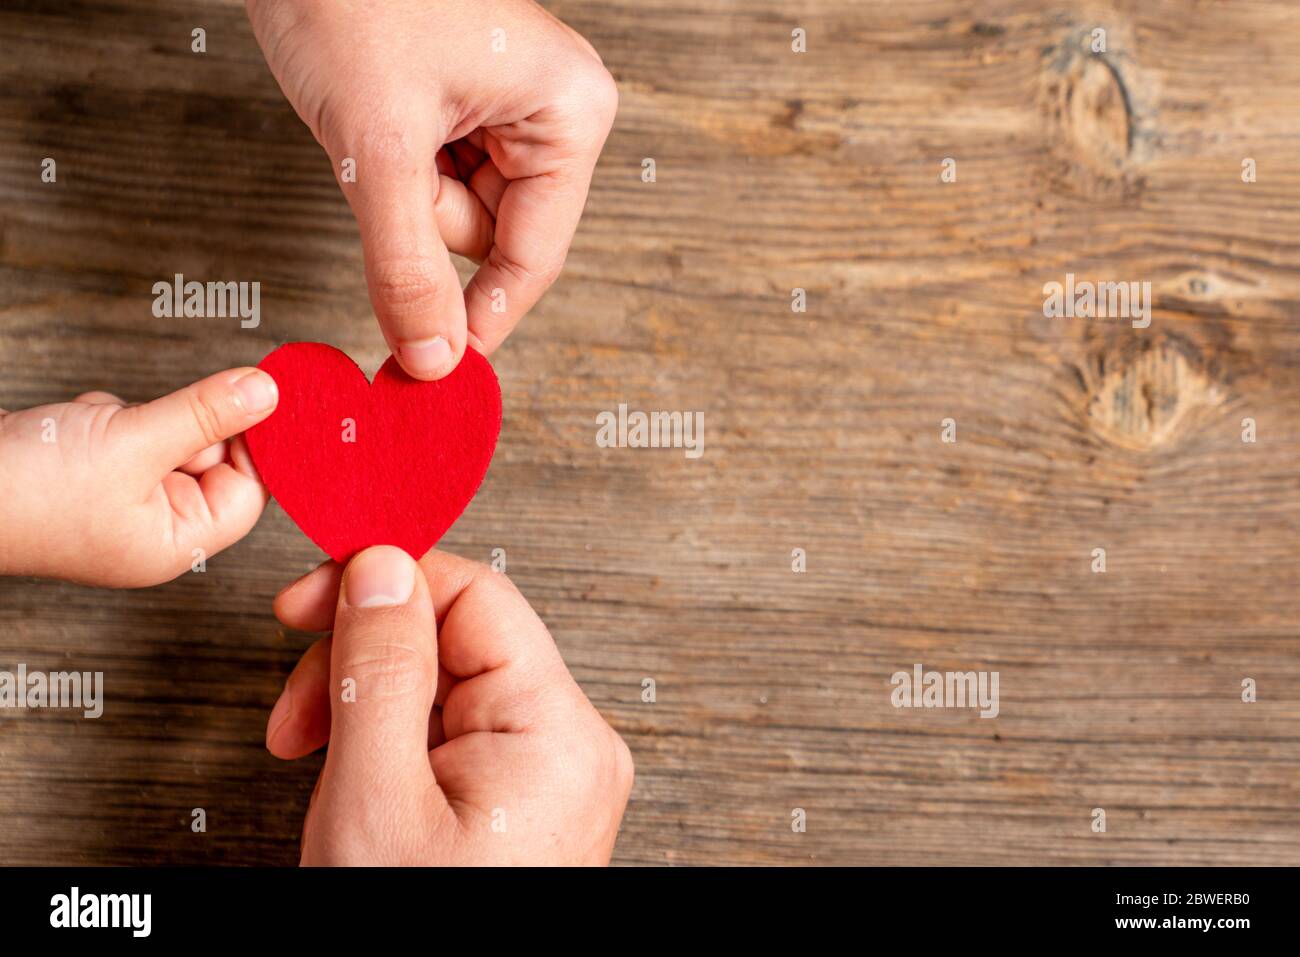 mains de famille tenant le coeur rouge sur fond en bois. Amour, don, charité, concept de santé Banque D'Images